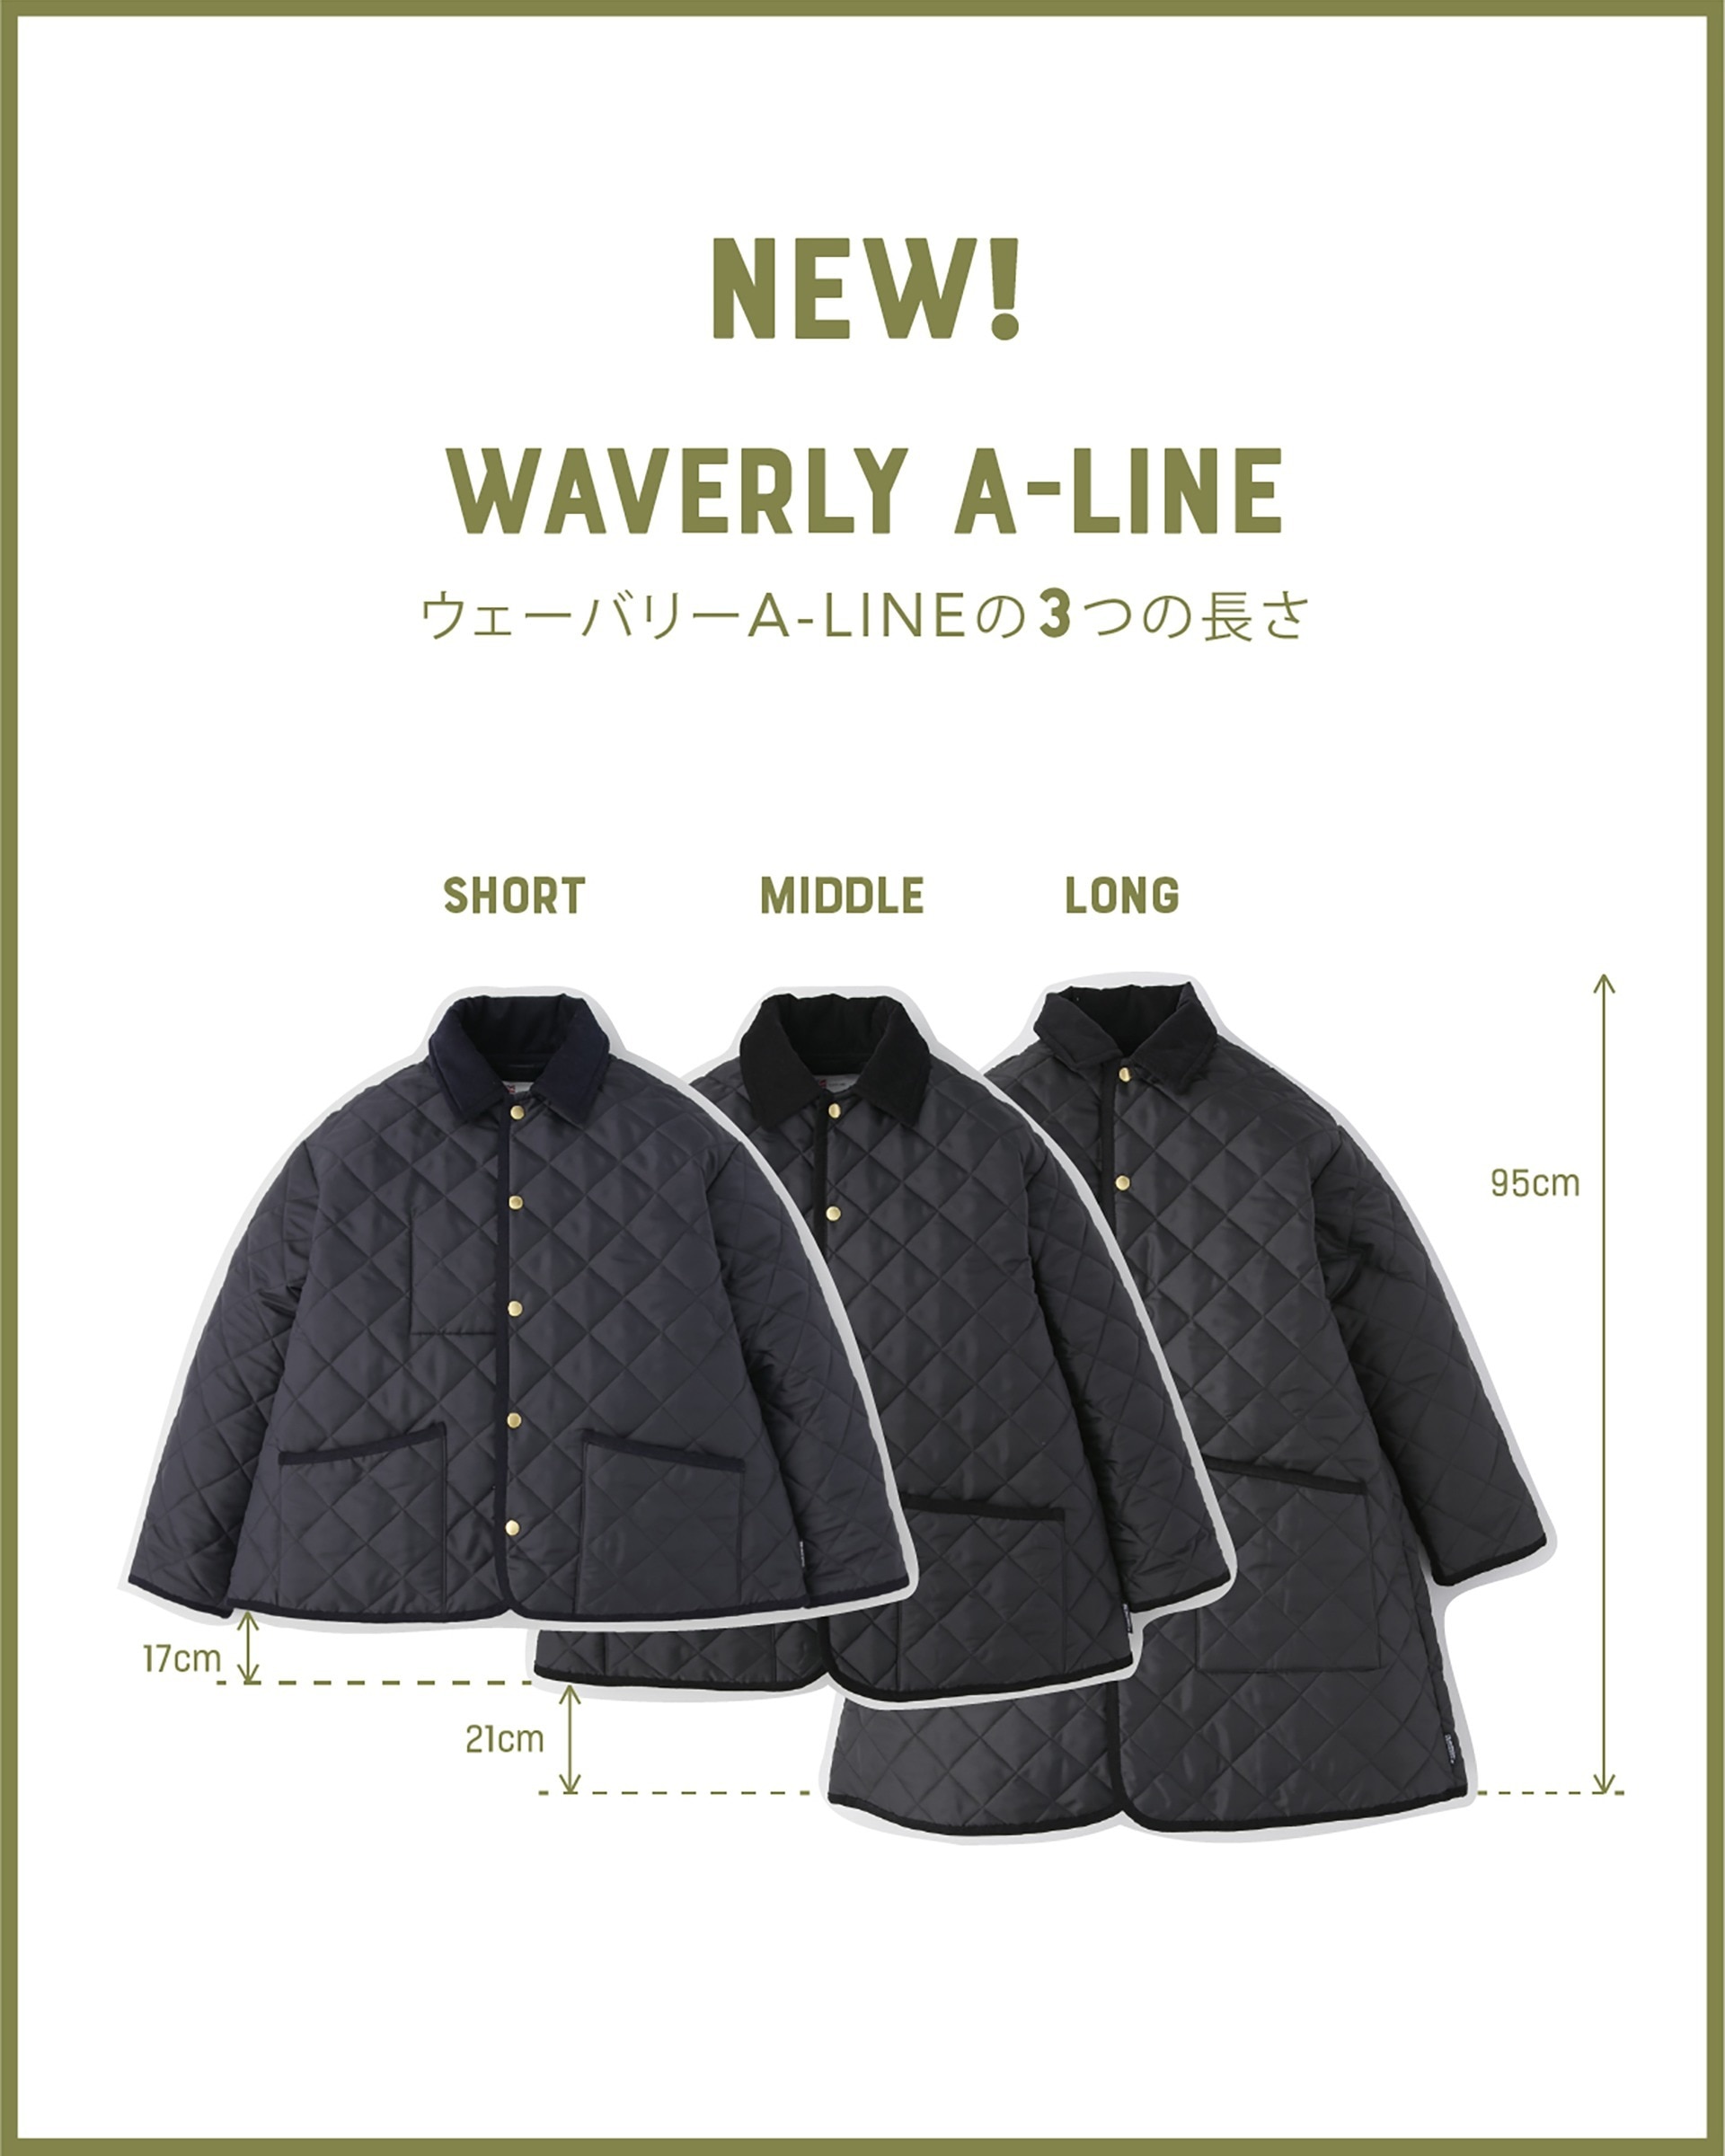 日本公式サイト直販 Traditional Weatherwear NEW WAVERLY DOWN